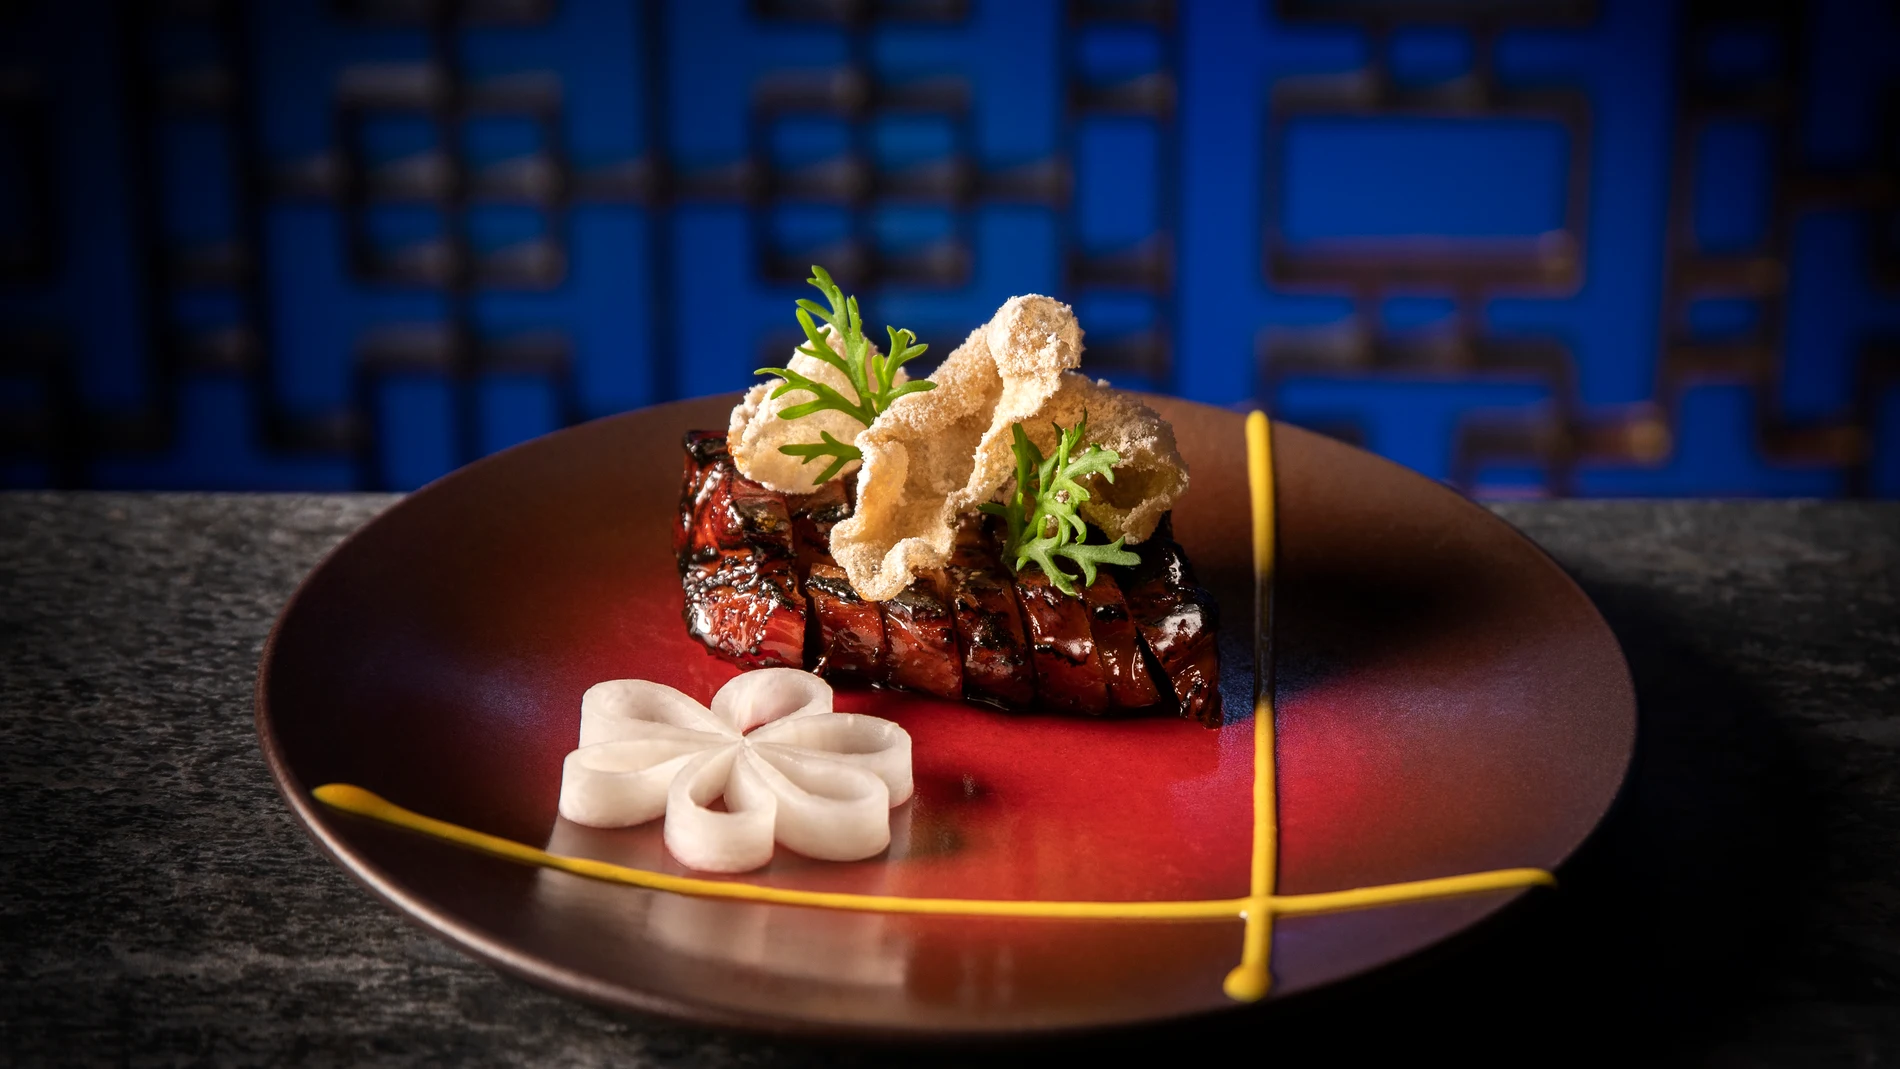 Four Seasons Hotel Madrid acoge un evento gastronómico exclusivo: el pop-up de Hakkasan